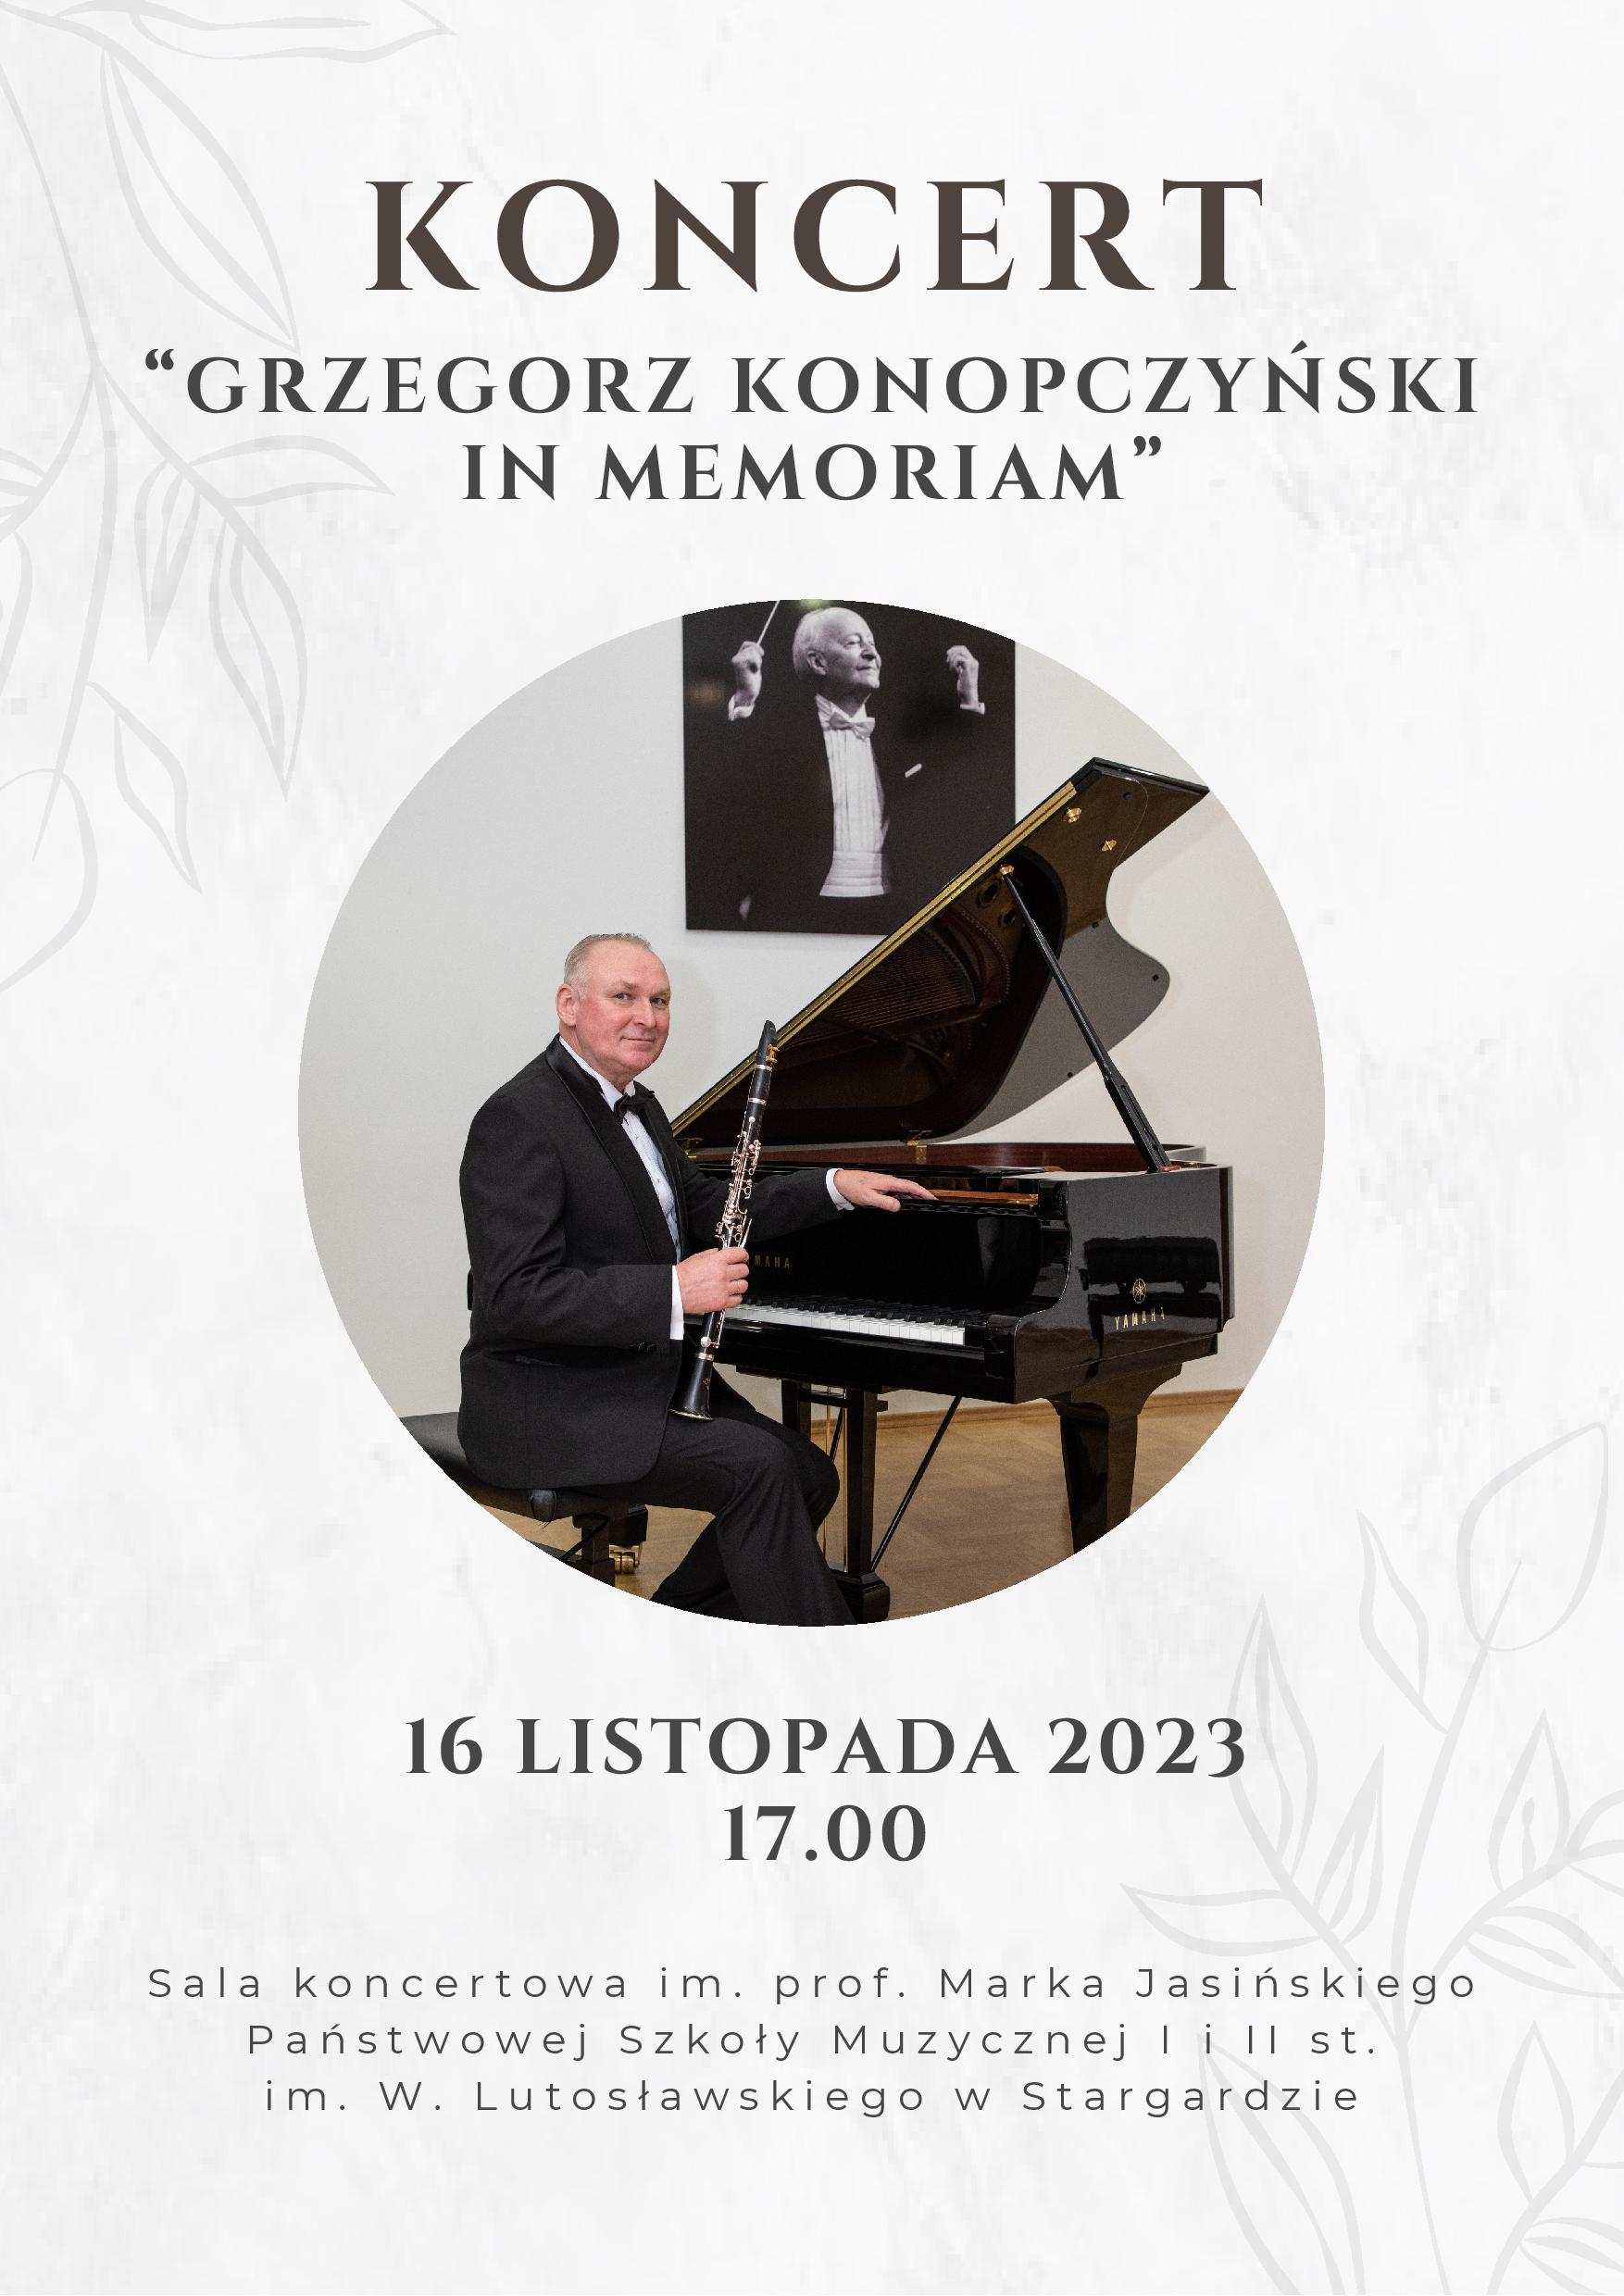 Plakat koncertu "Grzegorz Konopczyński in memoriam" w dniu 16 listopada 2023. Na plakacie w pozycji centralnej umieszczone jest zdjęcie śp. Grzegorza Konopczyńskiego siedzącego w przy fortepianie i trzymającego w prawej ręce klarnet. 